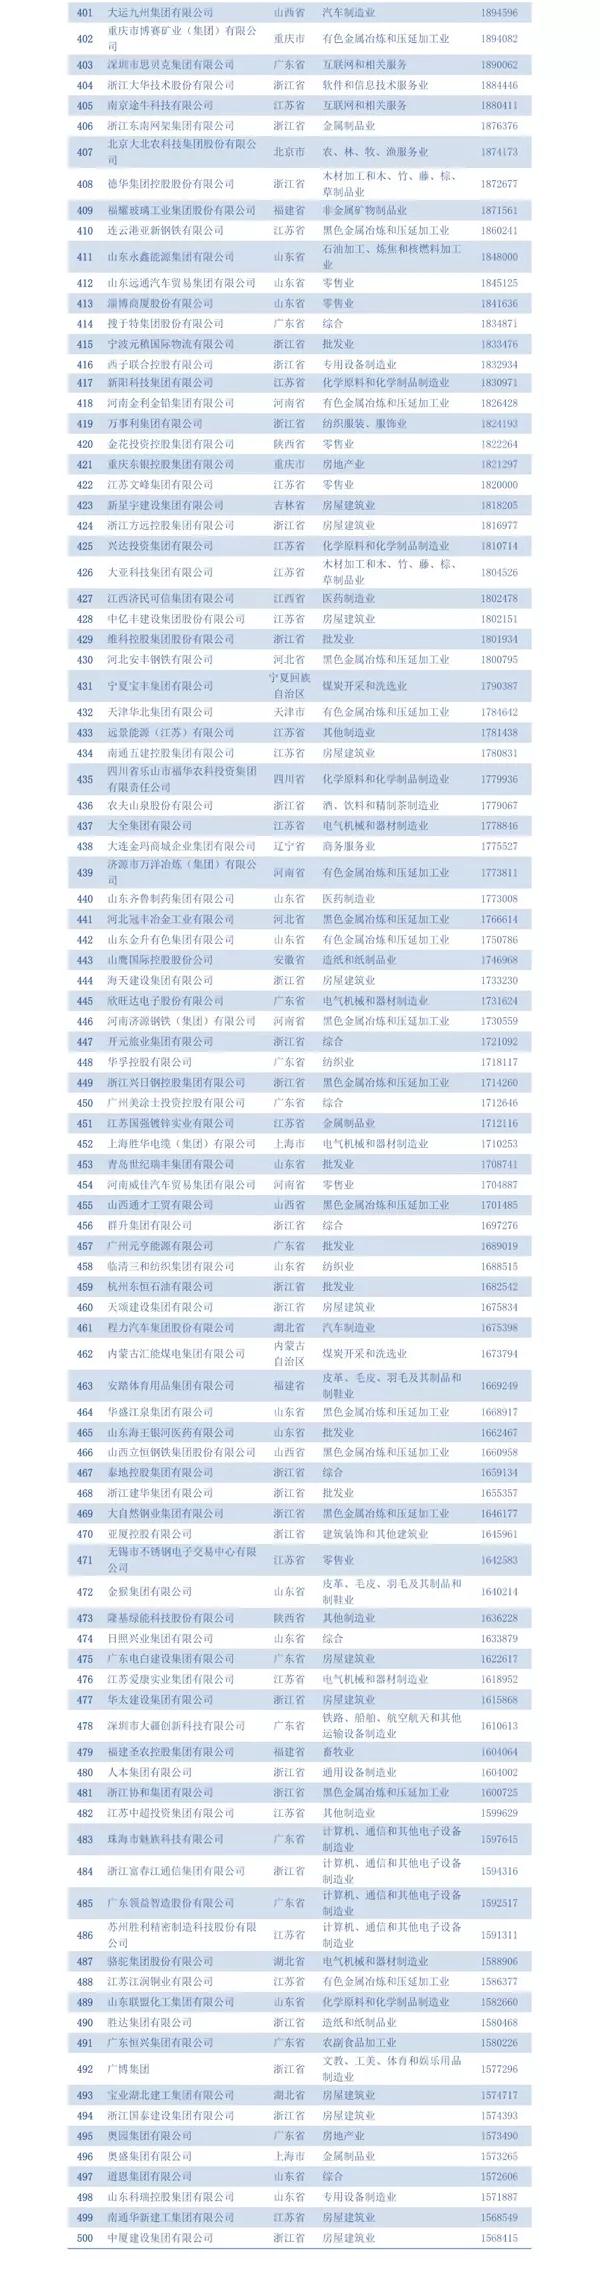 2018中國民營企業五百強名單四百名至五百名